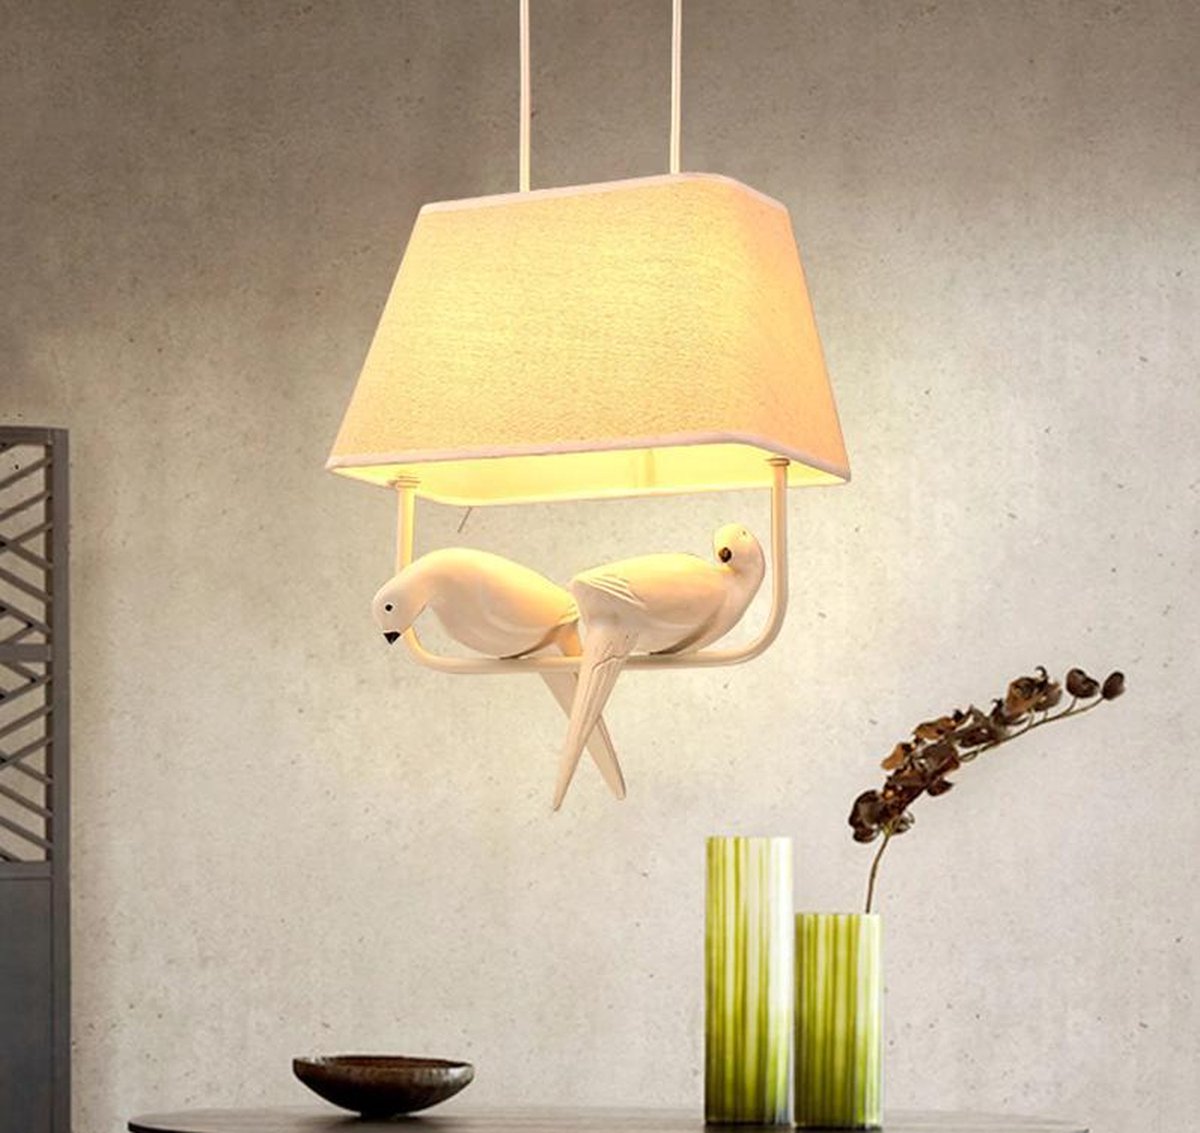 Hanglamp - lamp met 2 vogels / duiven - wit - keuken - kamer